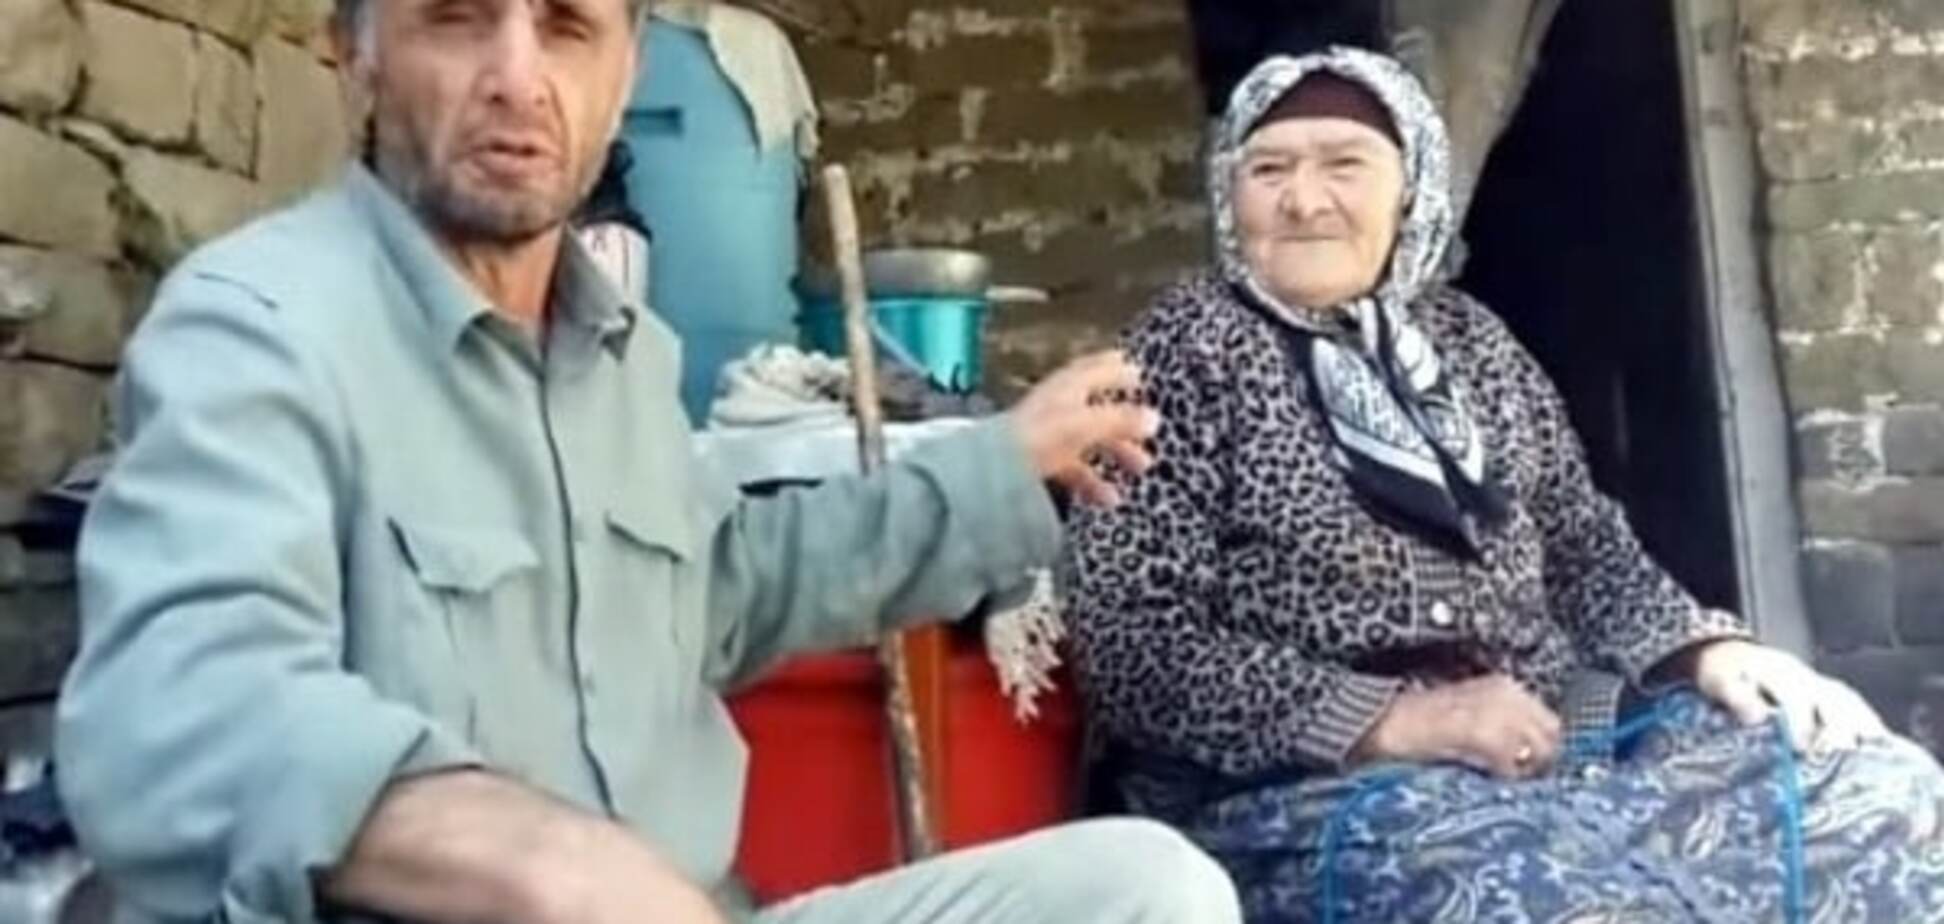 Скаржився Путіну на Кадирова: із Чечні викинули сім'ю 'неслухняного' громадянина